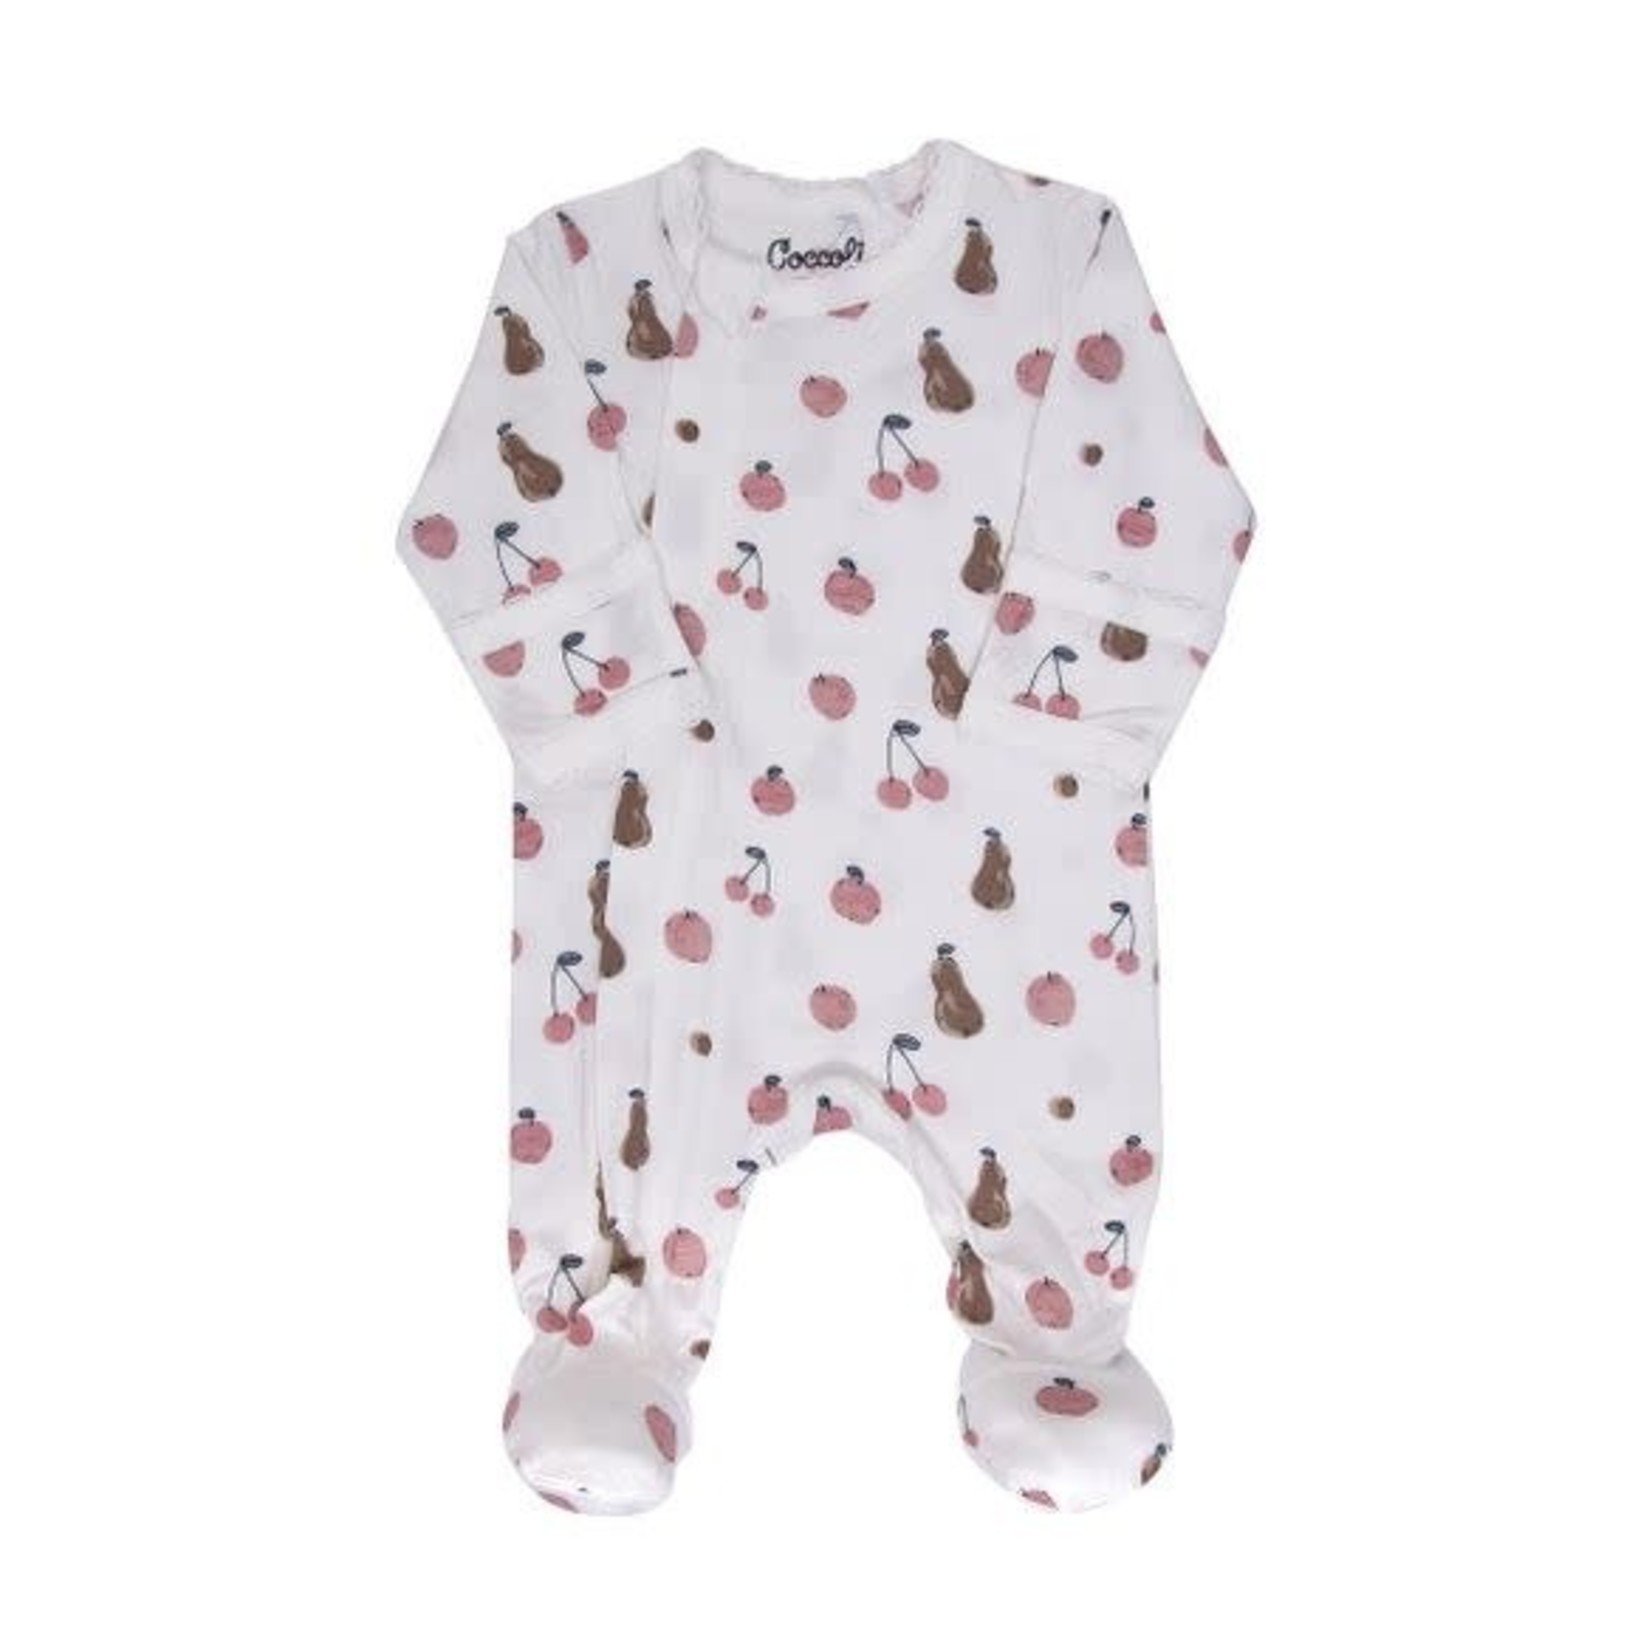 Coccoli COCCOLI - Pyjama une pièce pour bébé avec motifs de petits fruits